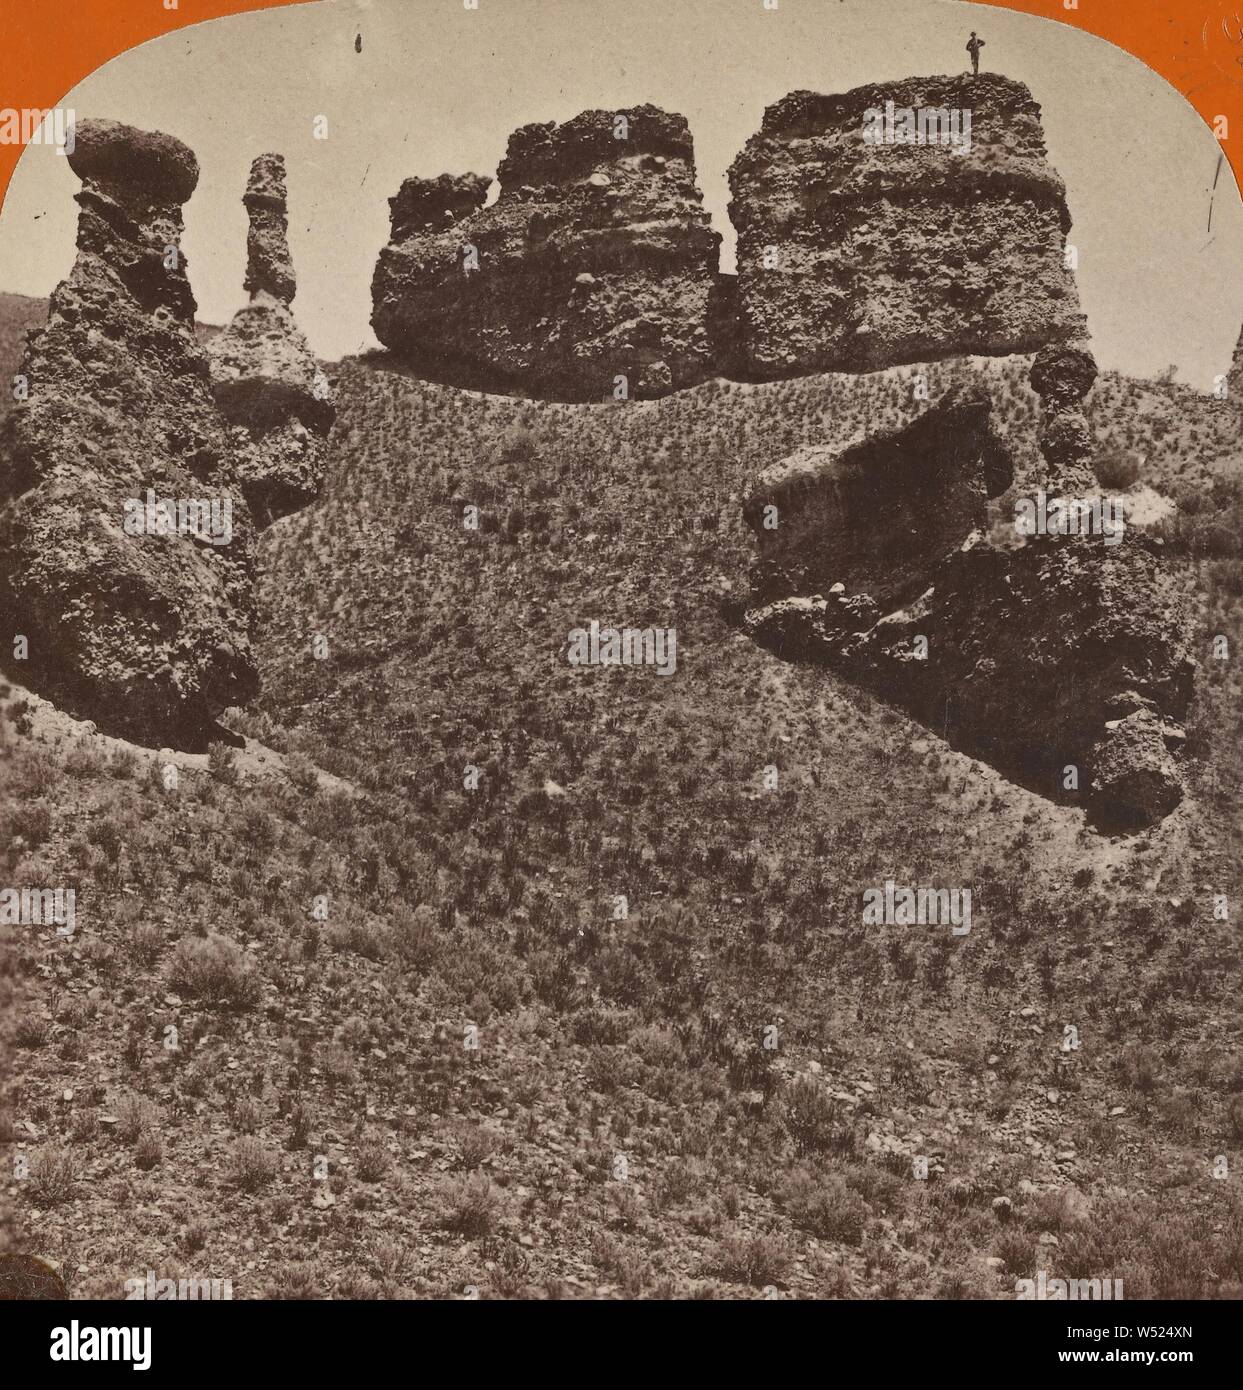 Dans les roches sorcière Canon Echo, U.P.R.R., Charles Bierstadt (Américain, né en Allemagne, 1819 - 1903), à propos de 1869, à l'albumine argentique Banque D'Images